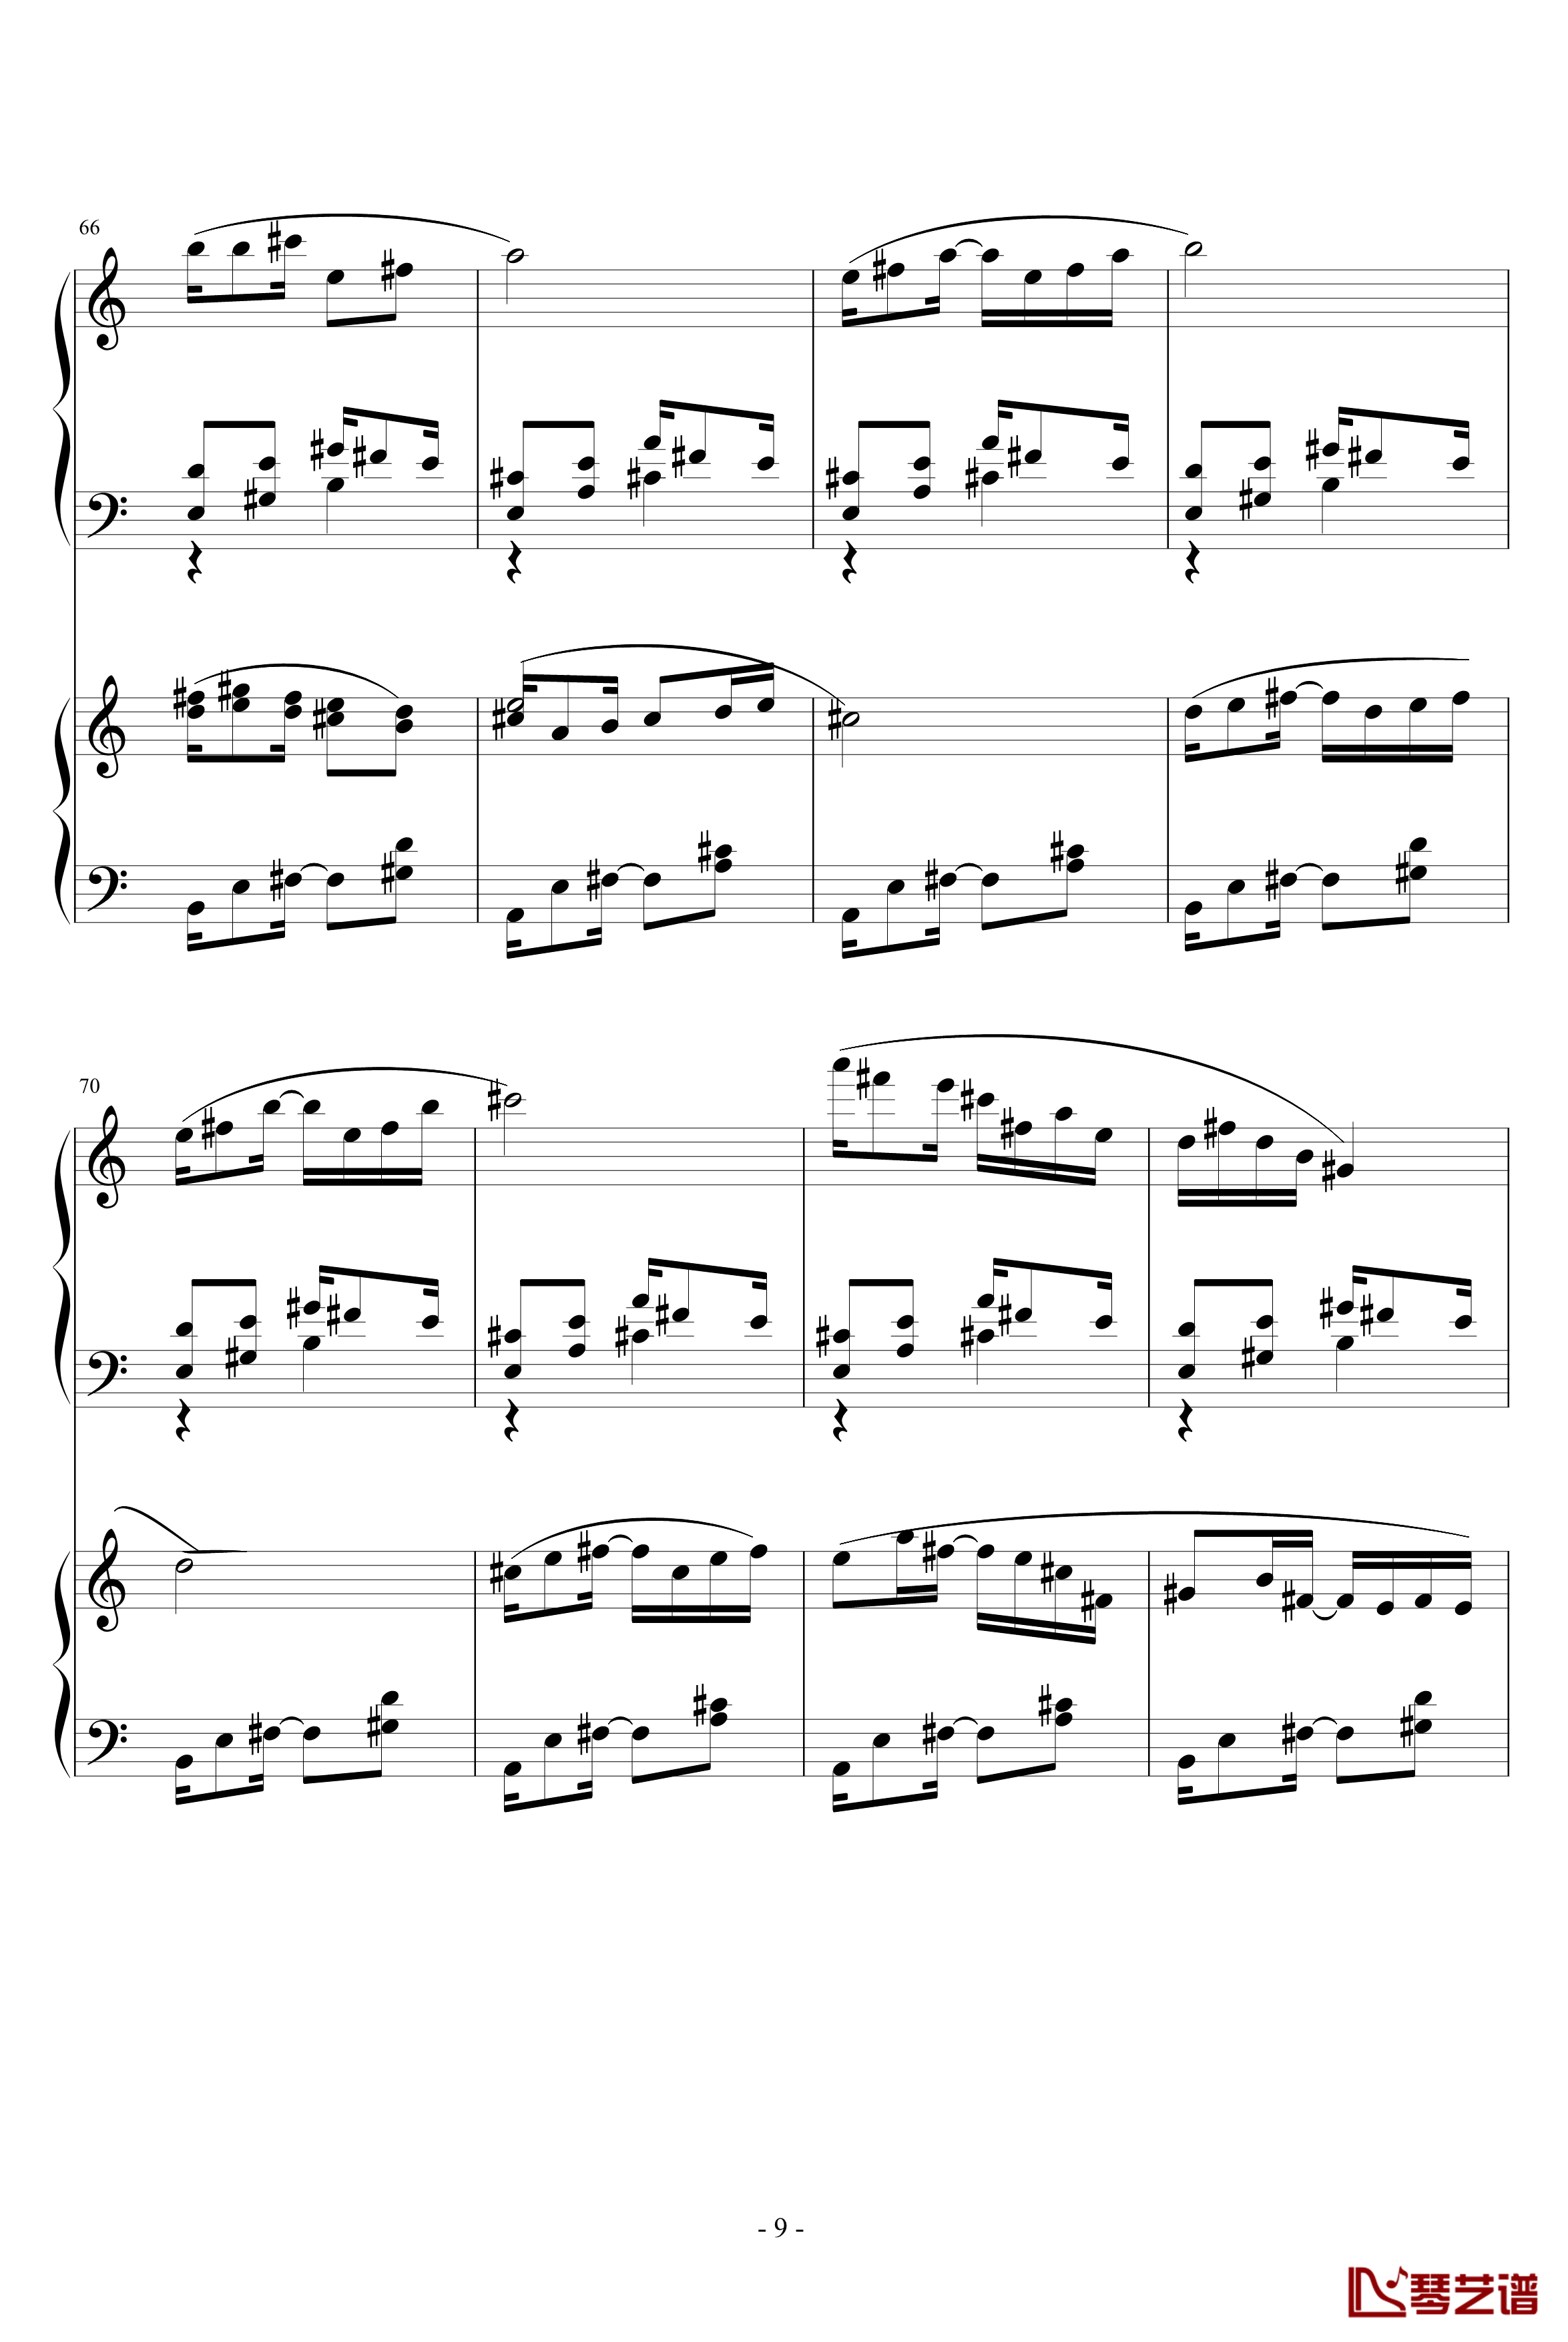 爵士双钢琴奏鸣曲第三乐章钢琴谱-米约9